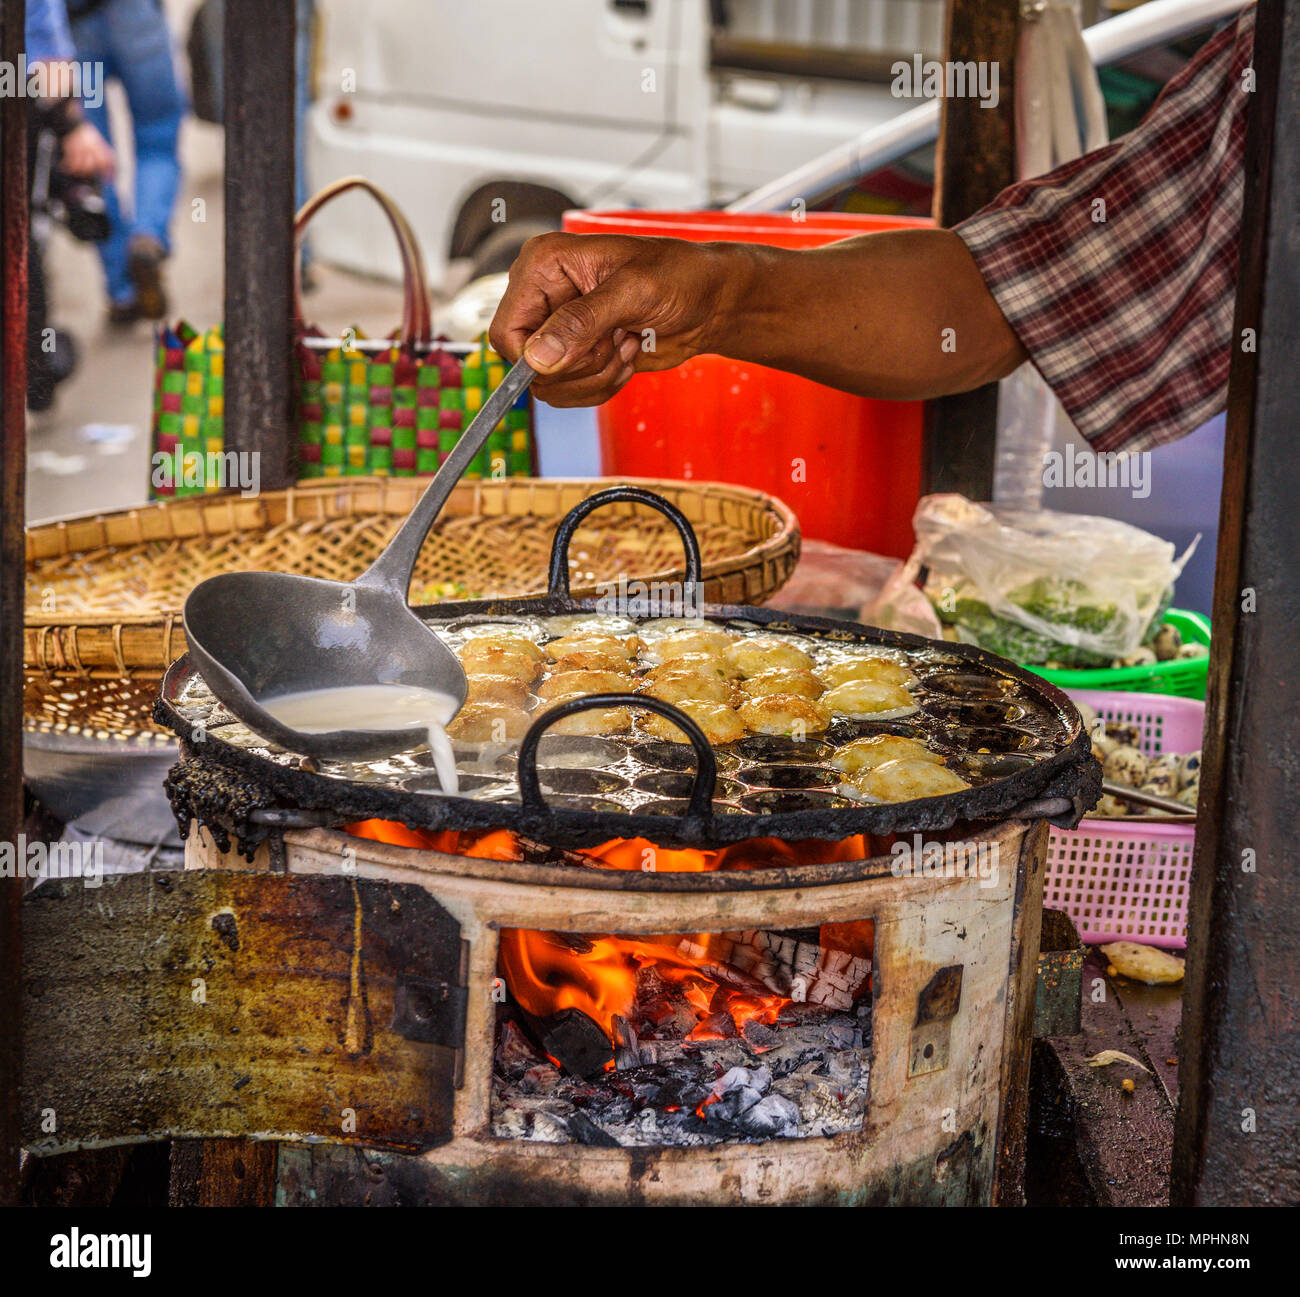 Cuisinier prépare des aliments de rue au Myanmar Banque D'Images